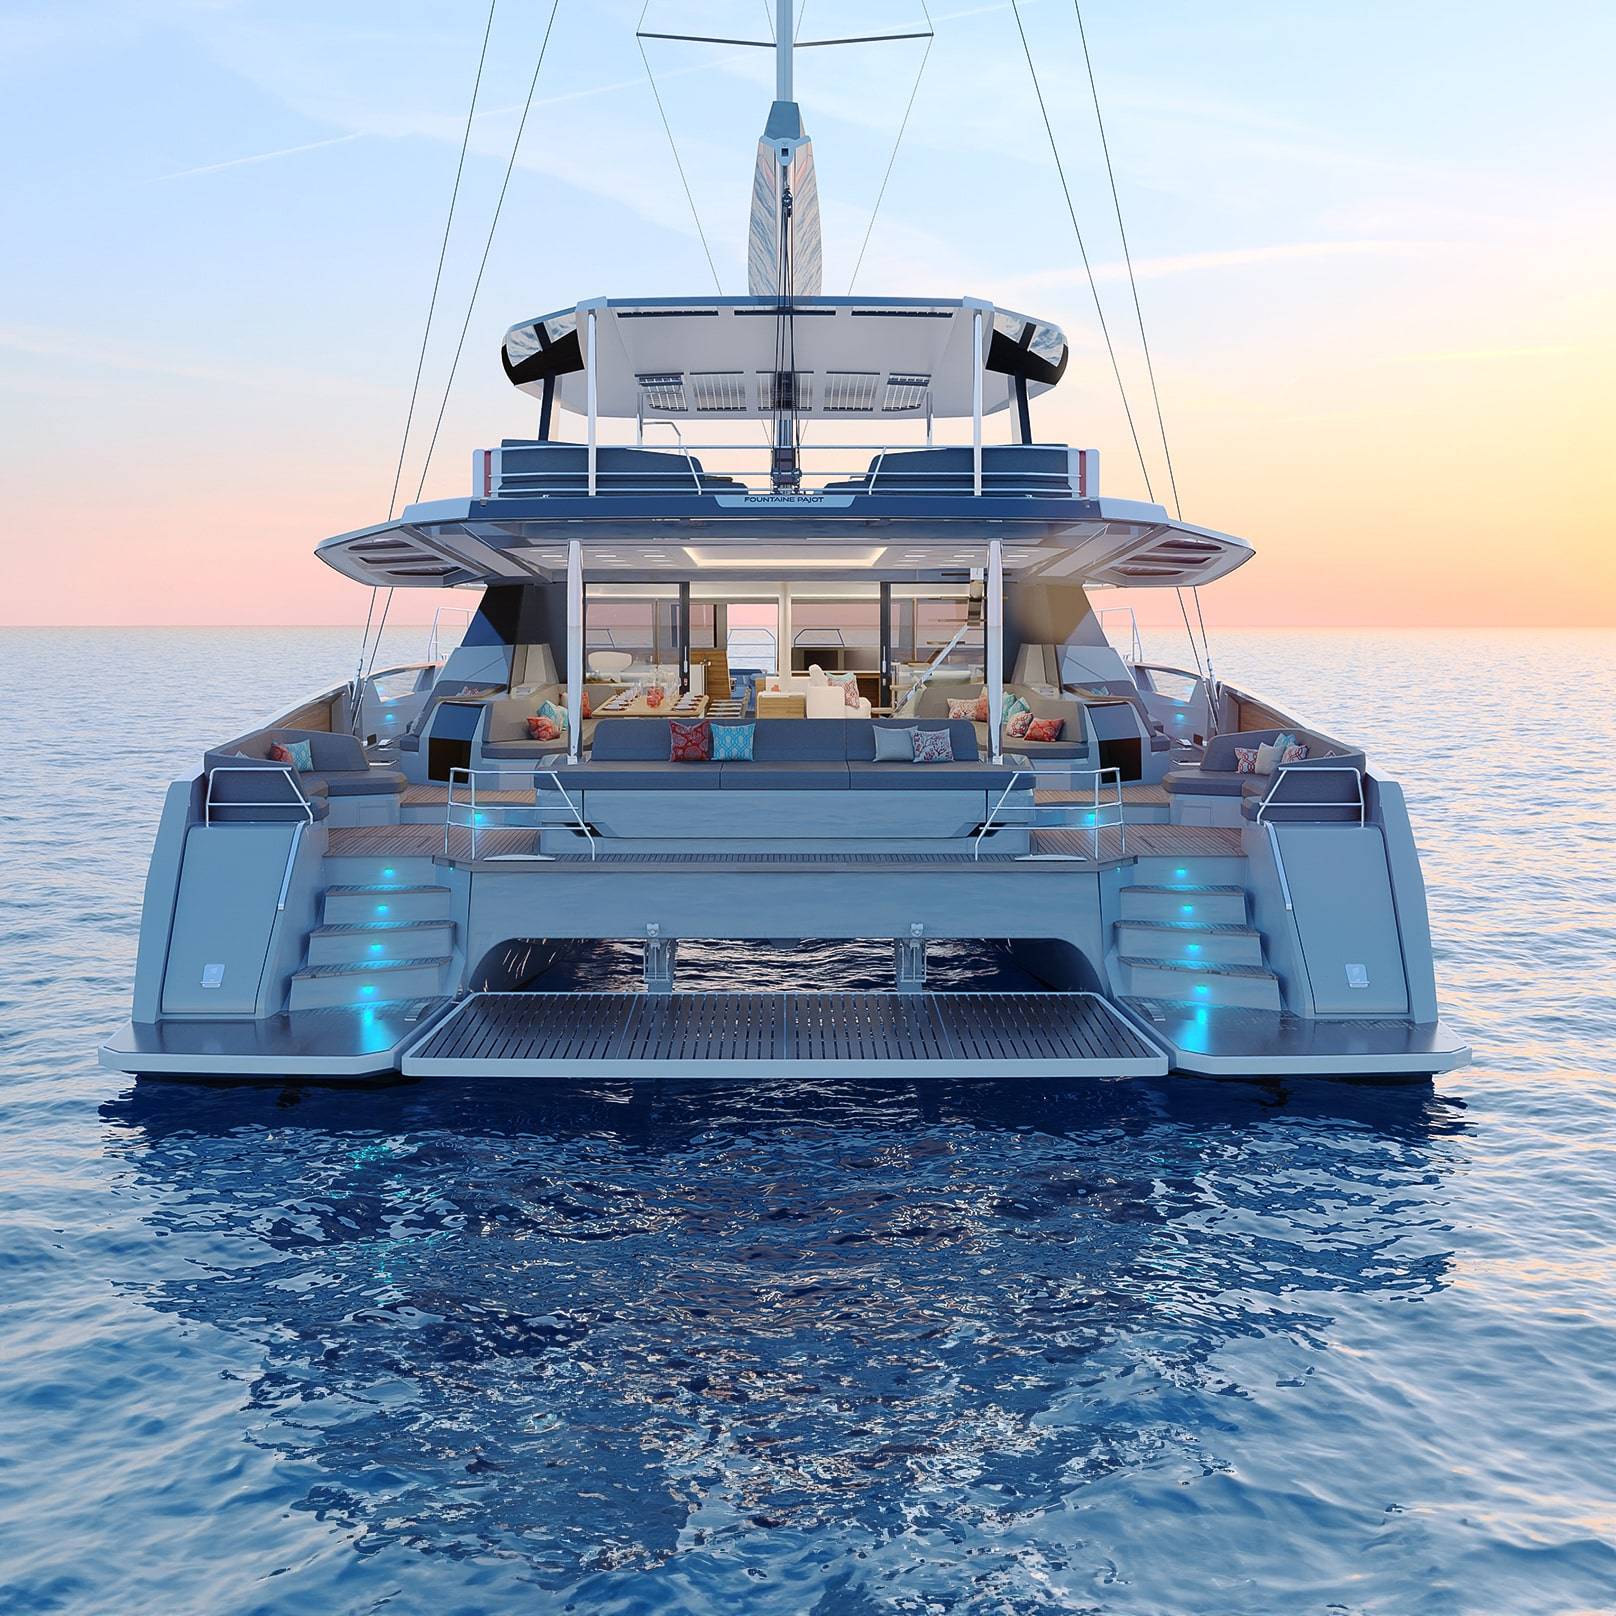 Thira-80-Fountaine-Pajot-Sailing-Catamaran-luxury-super-yacht-catamaran-back-of-the-boat